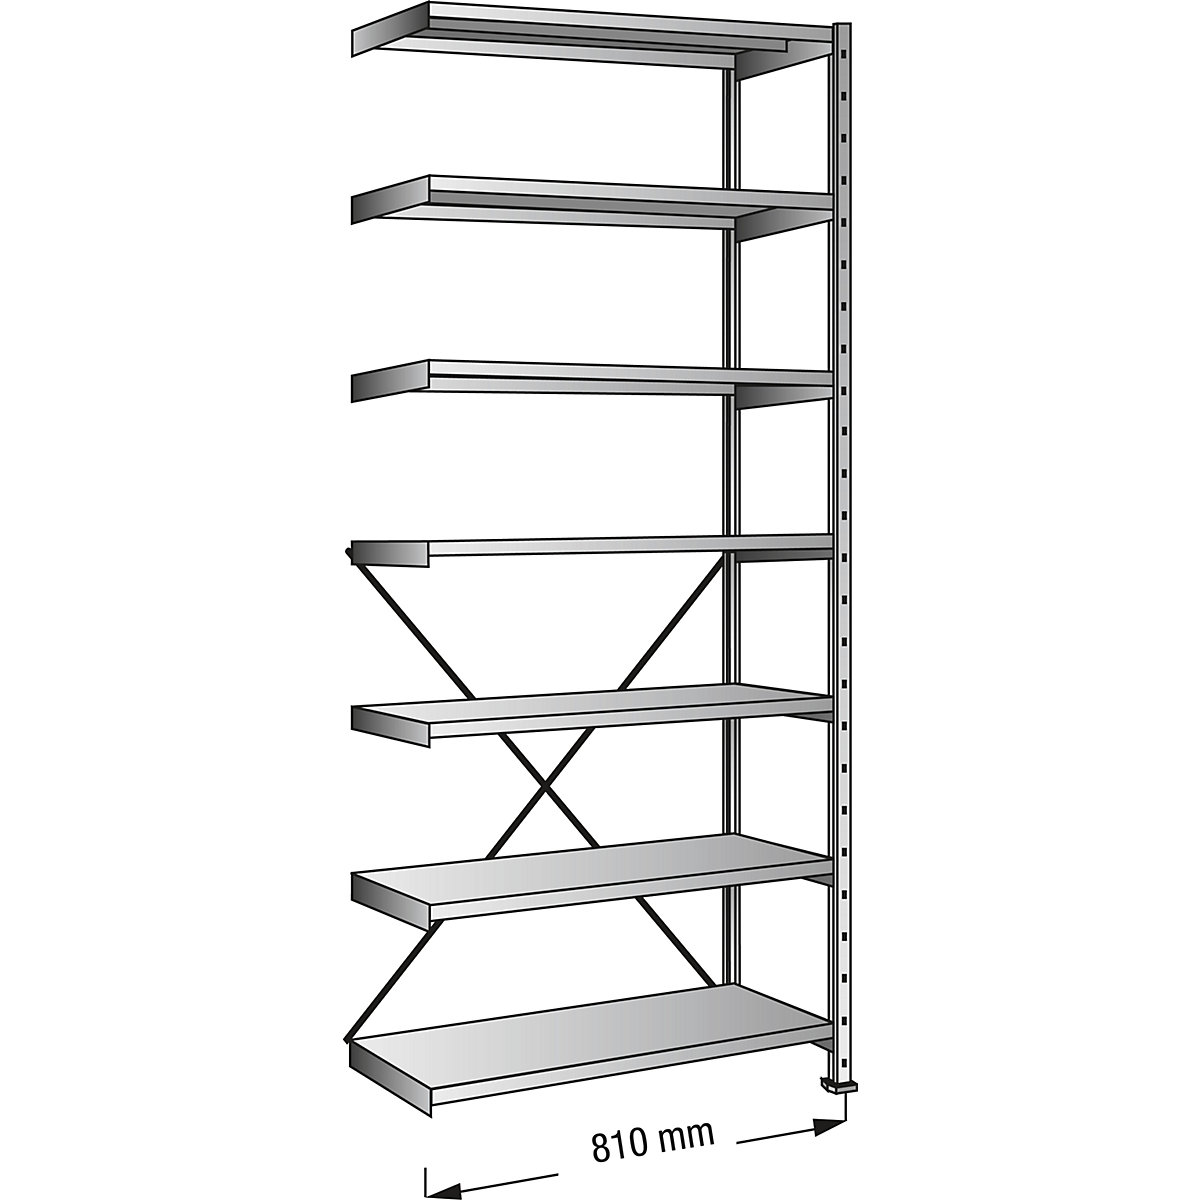 Boltless shelving unit, zinc plated, 7 shelves, height 2640 mm, shelf width 800 mm, depth 700 mm, extension shelf unit